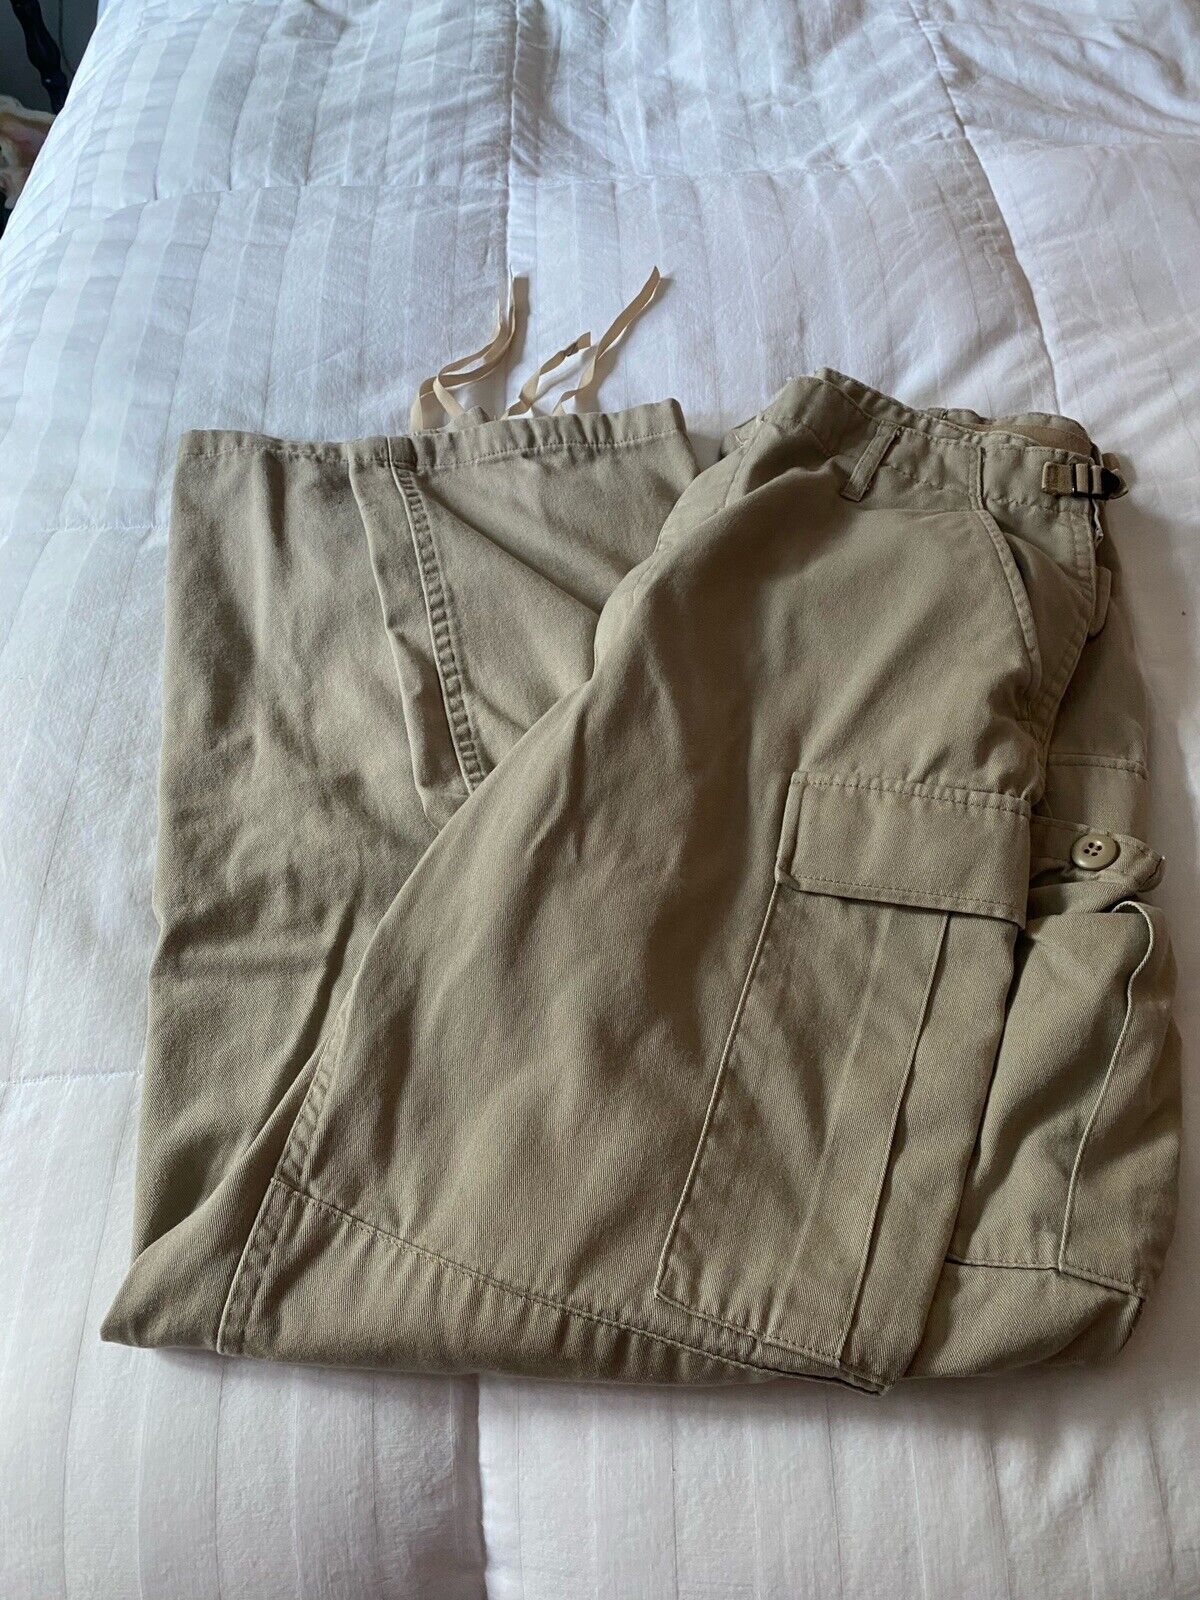 Men's US Navy Flight Deck Trousers/Cargo Pants (Khaki, Size Medium-Long)